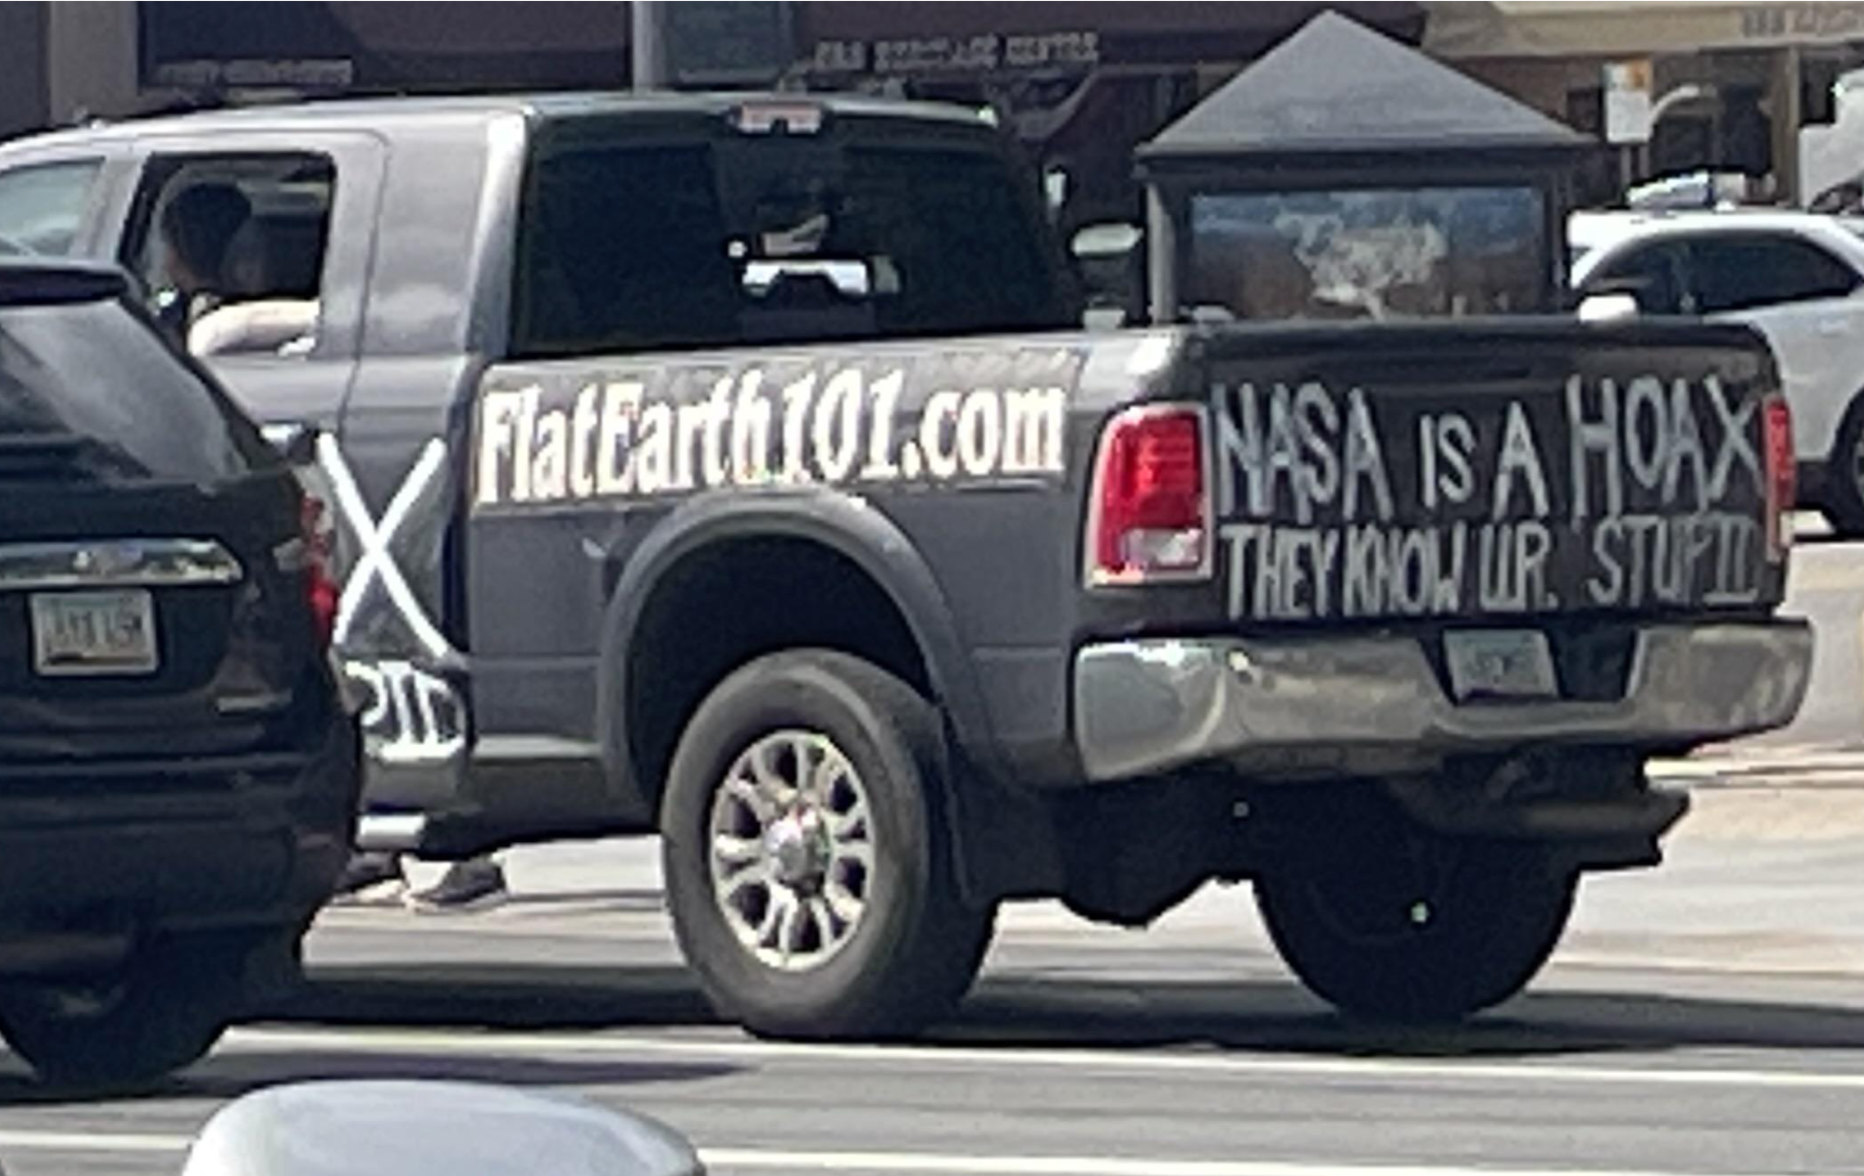 &quot;NASA is a hoax&quot;